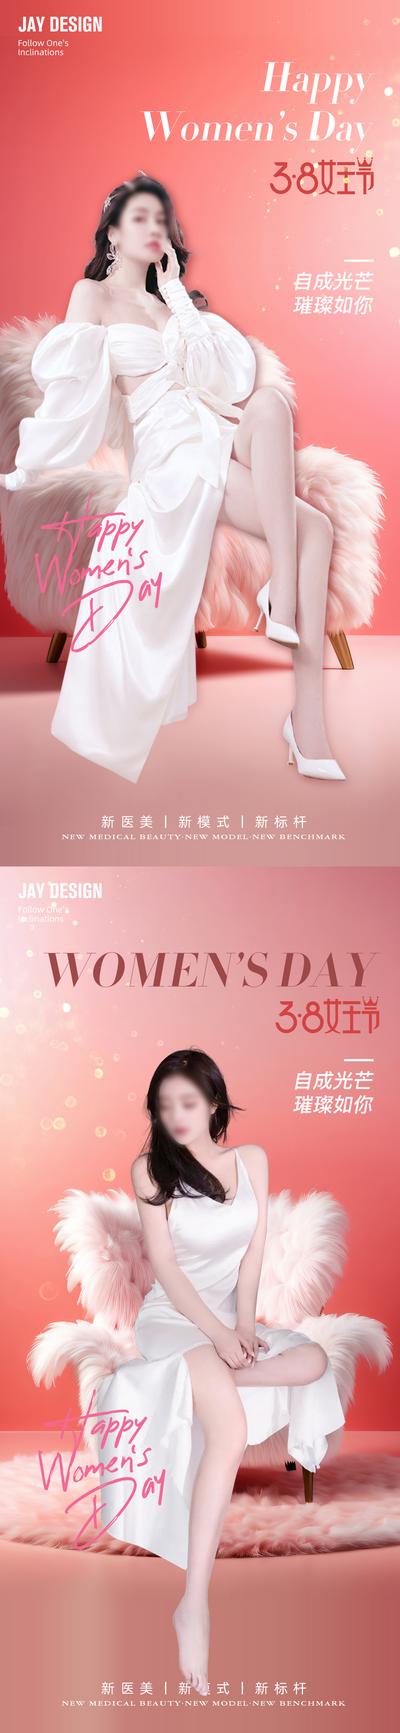 南门网 广告 海报 节日 妇女节 地产 医美 人物 系列 公历节日 38 女神节 女王节